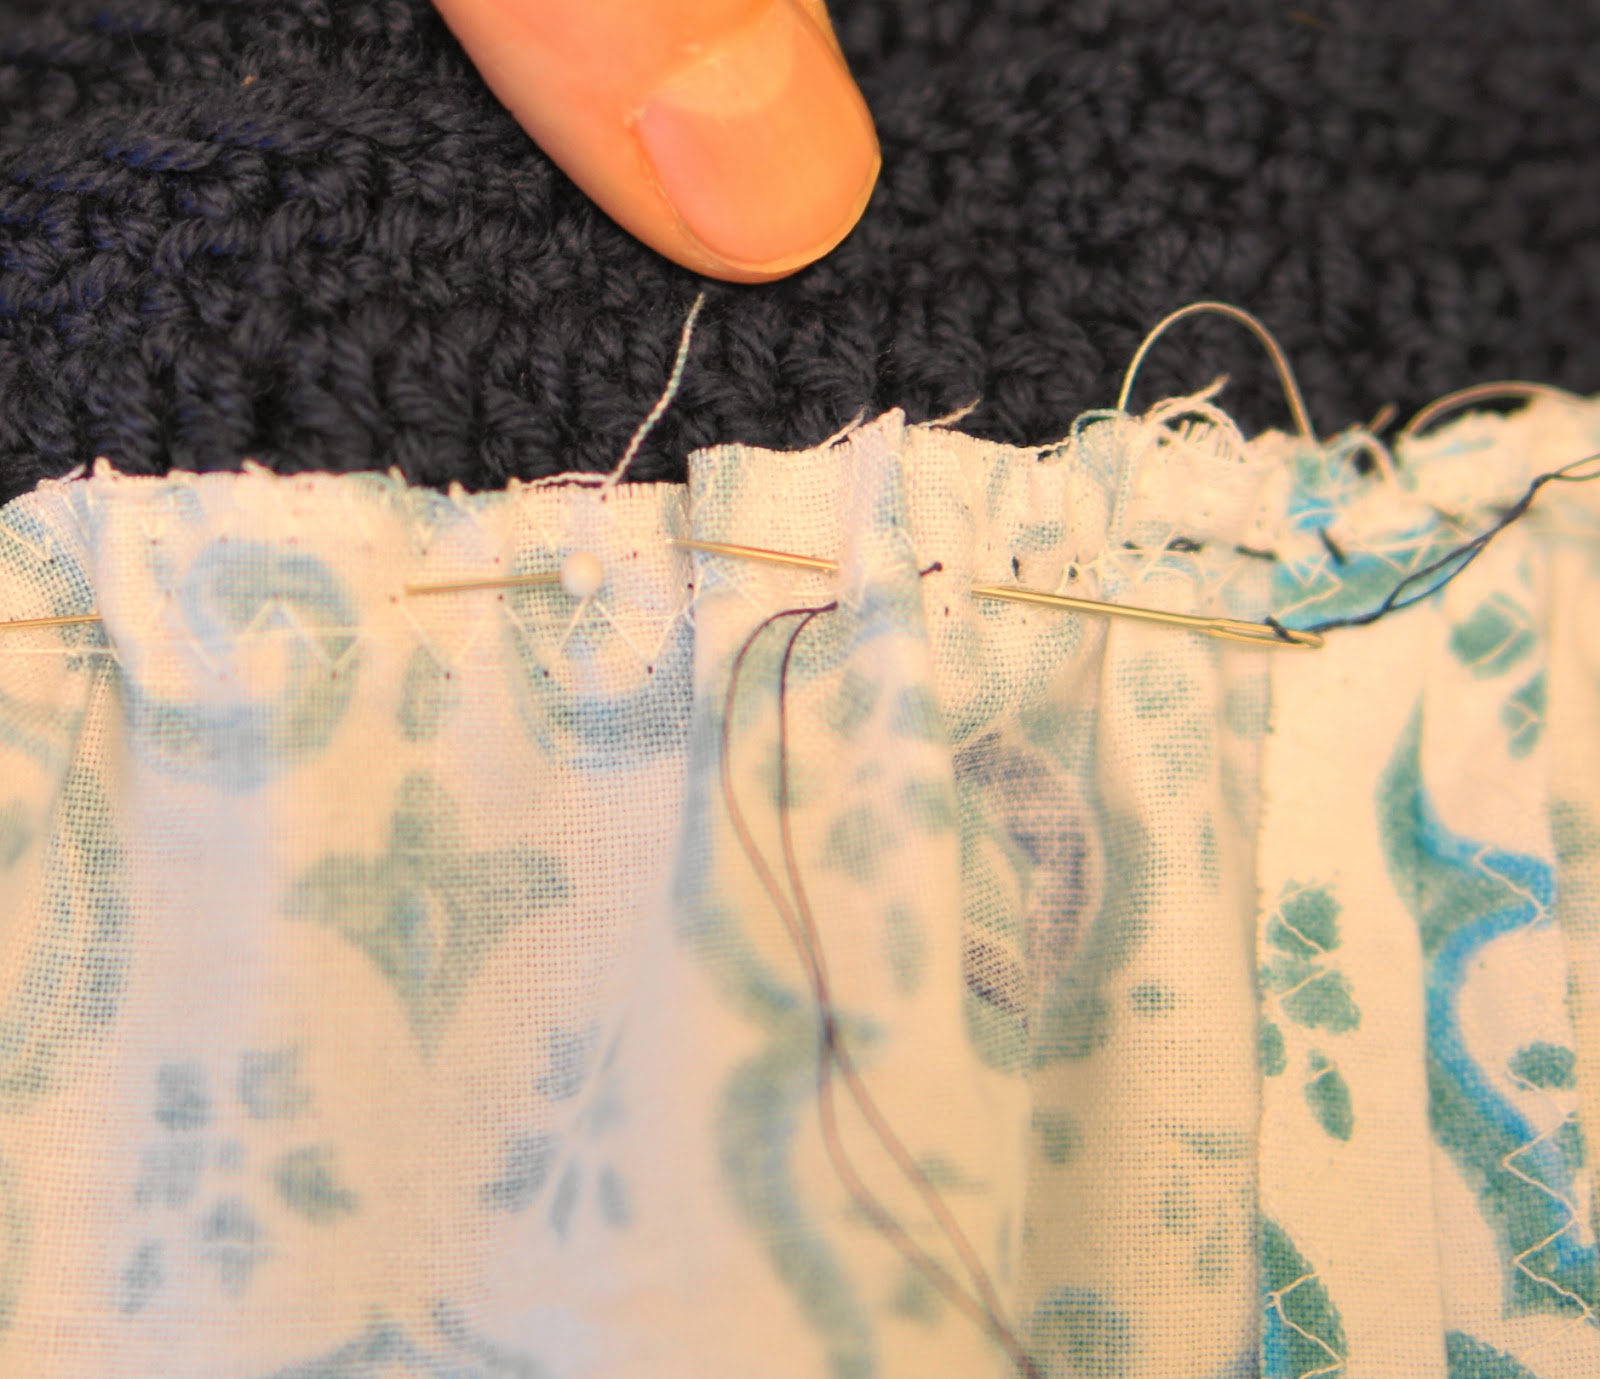 Ball Hank n' Skein: Crochet + Sewing = TLA